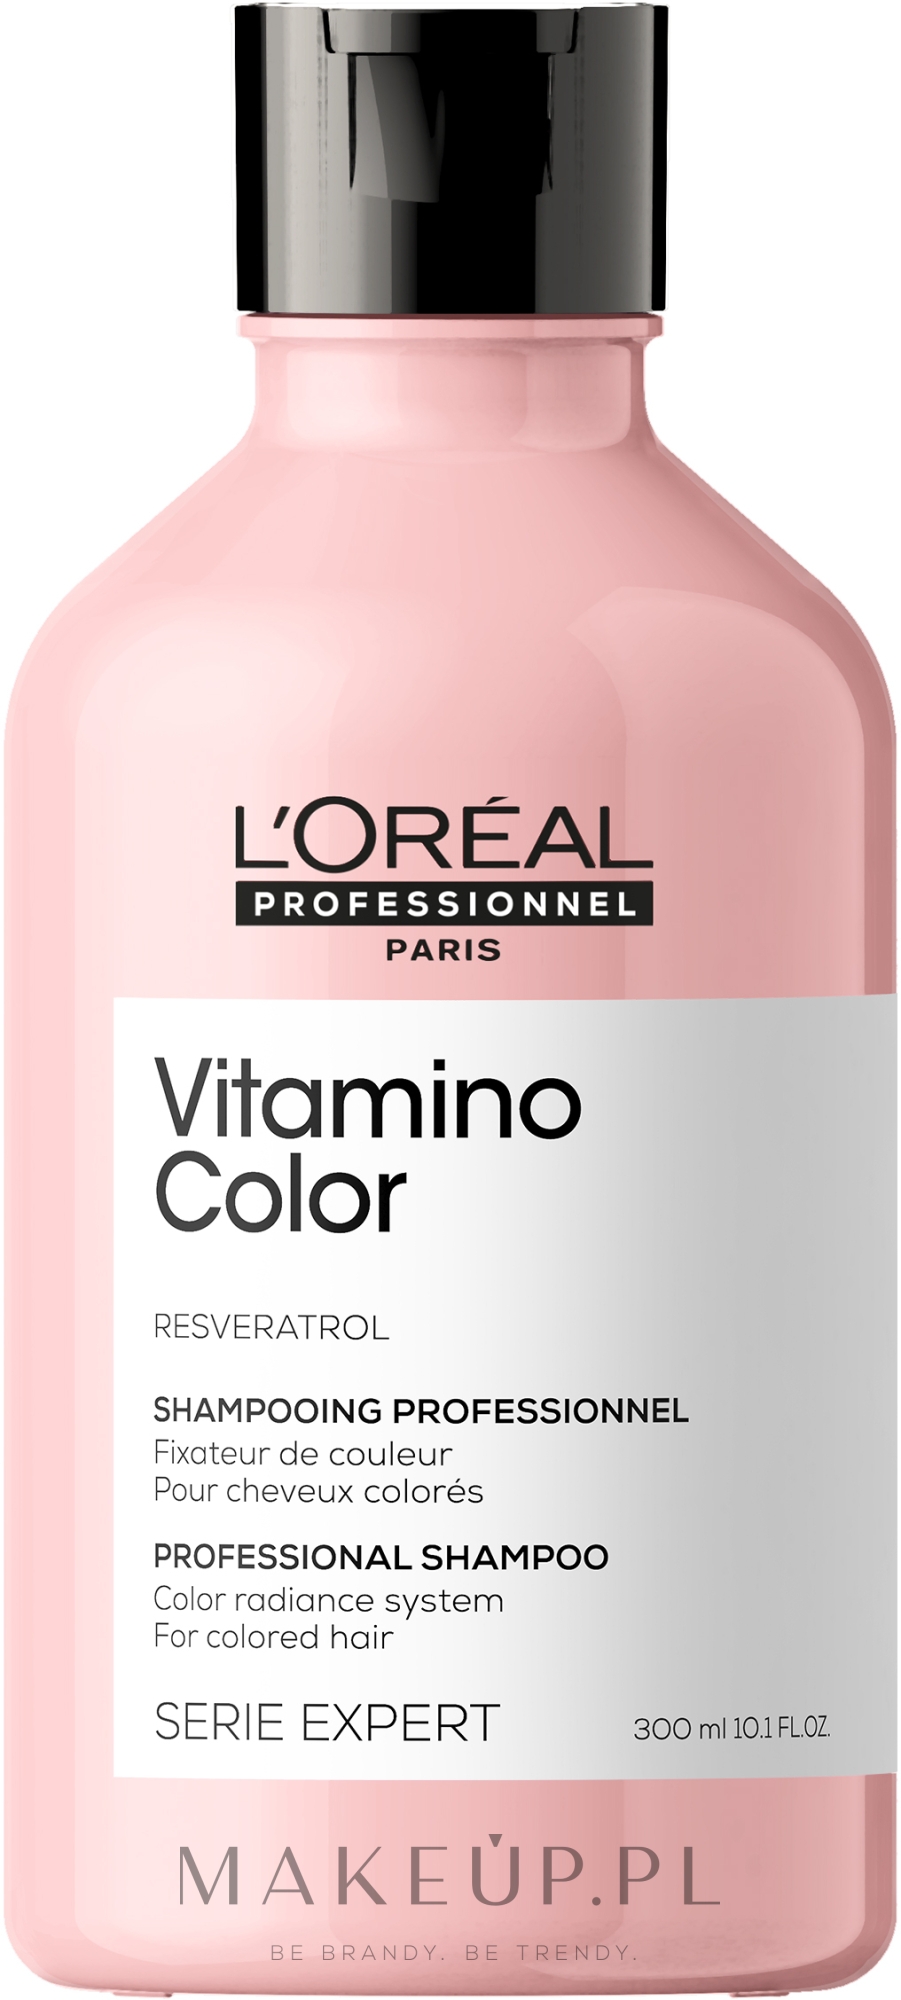 szampon loreal vitamino do włosów cienkich